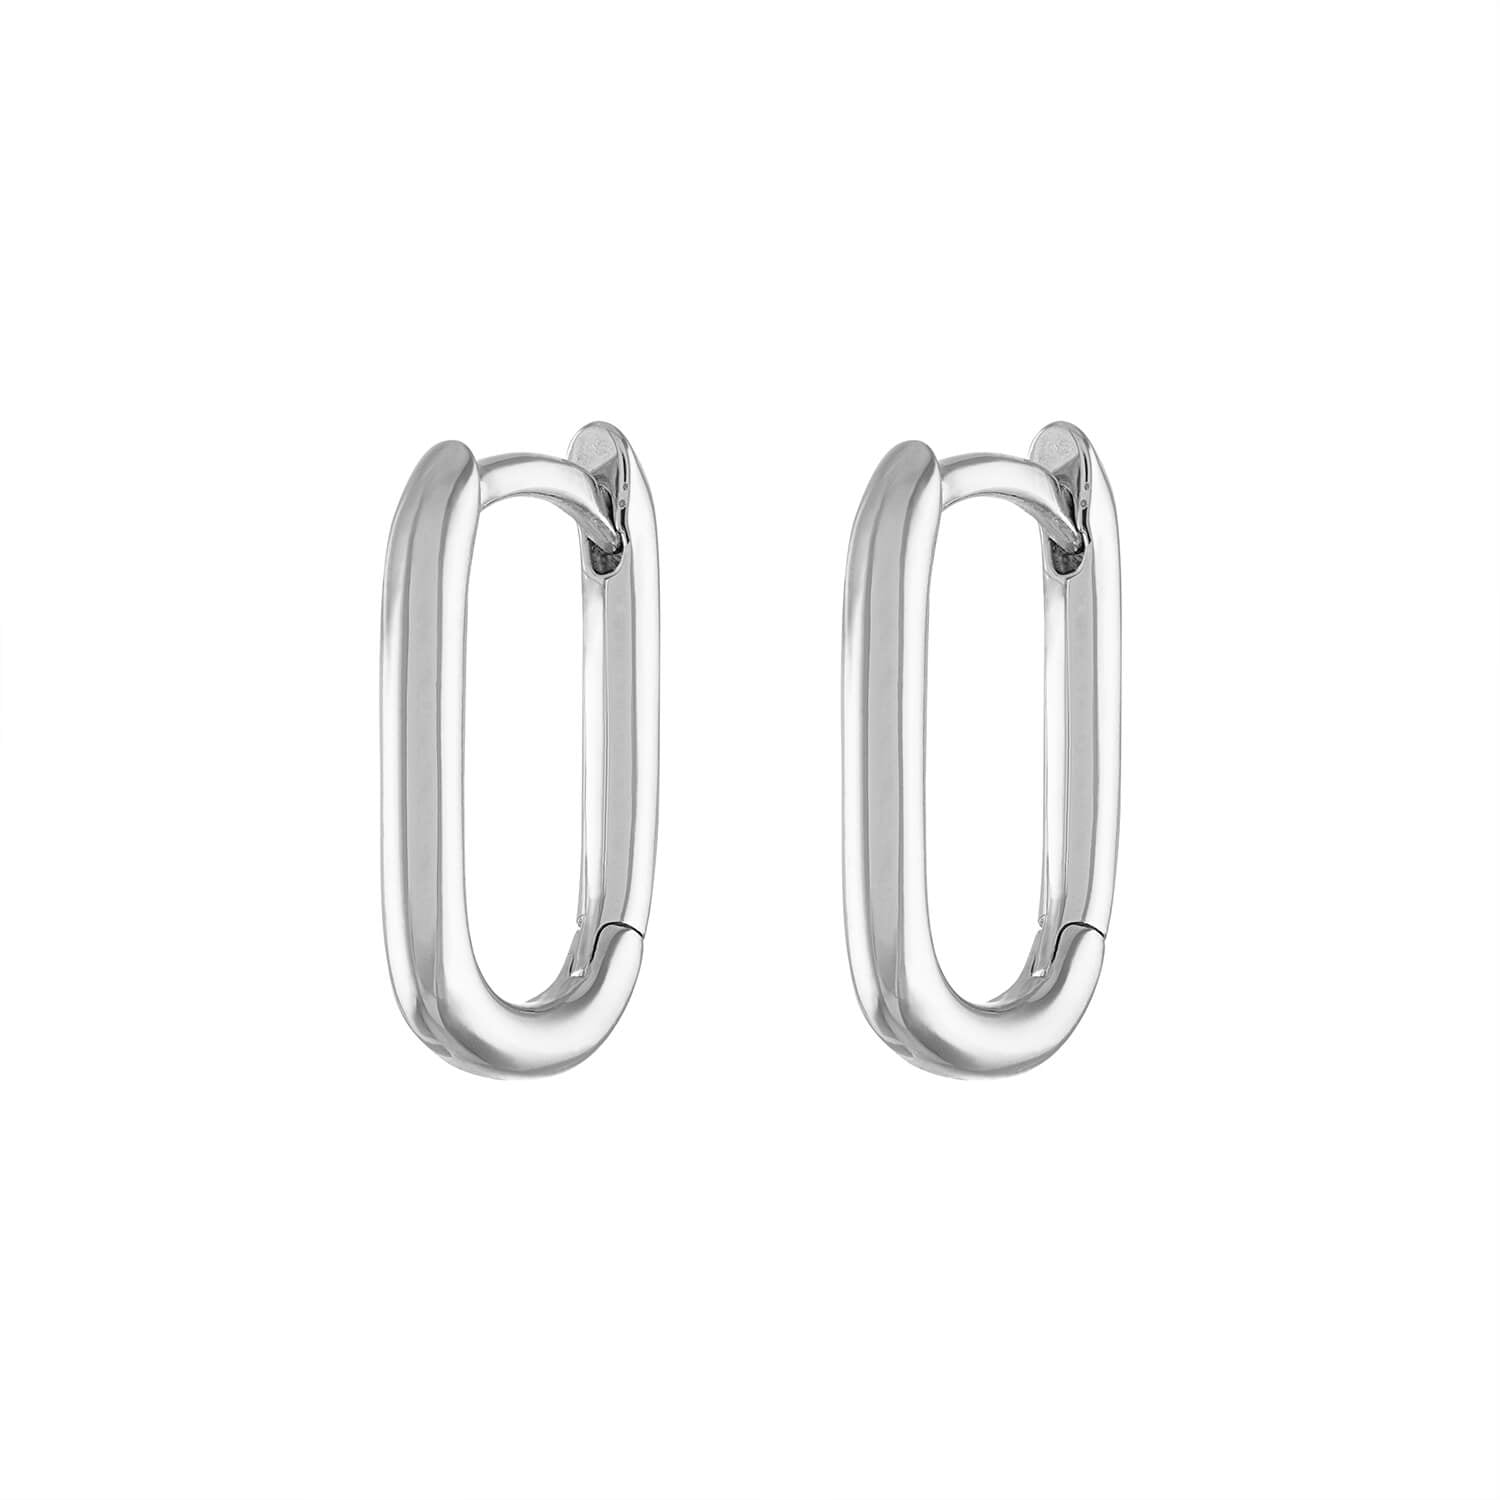 Baby Halo Oval Hoop Earrings in Sterling Silver